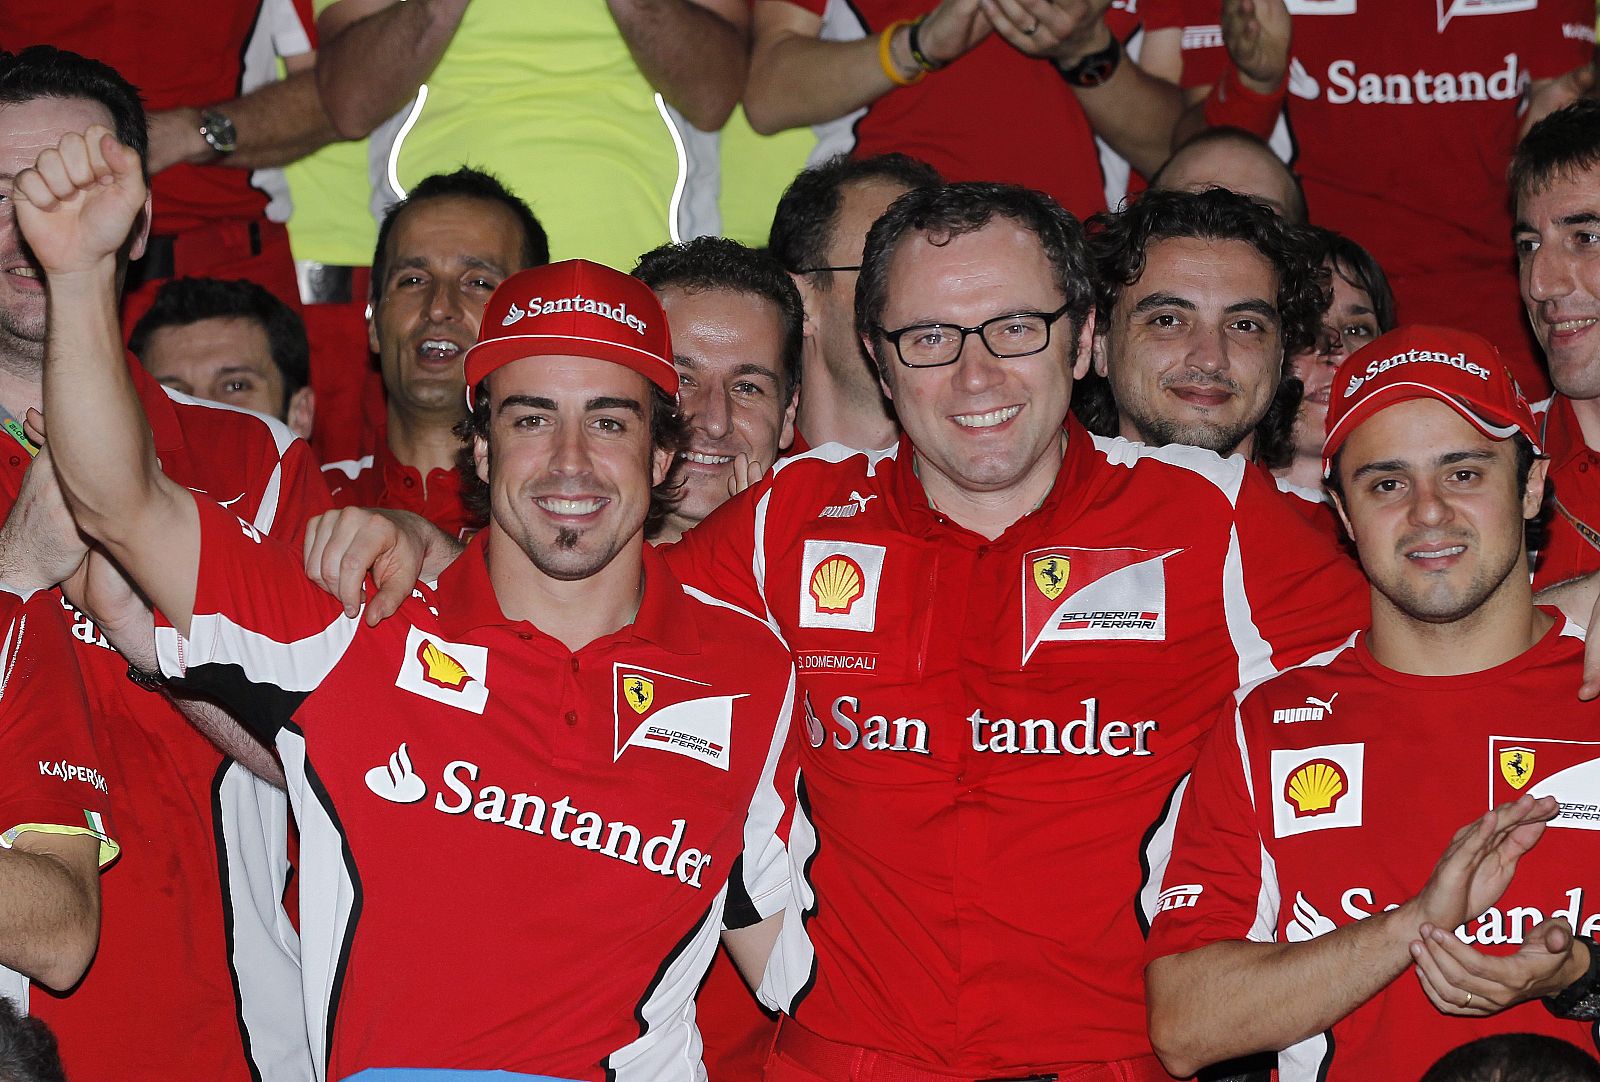 El piloto español de Ferrari, Fernando Alonso (c-izda), y su compañero brasileño, Felipe Massa (d), posan junto al jefe de su escudería, Stefano Domenicali (c-dcha)